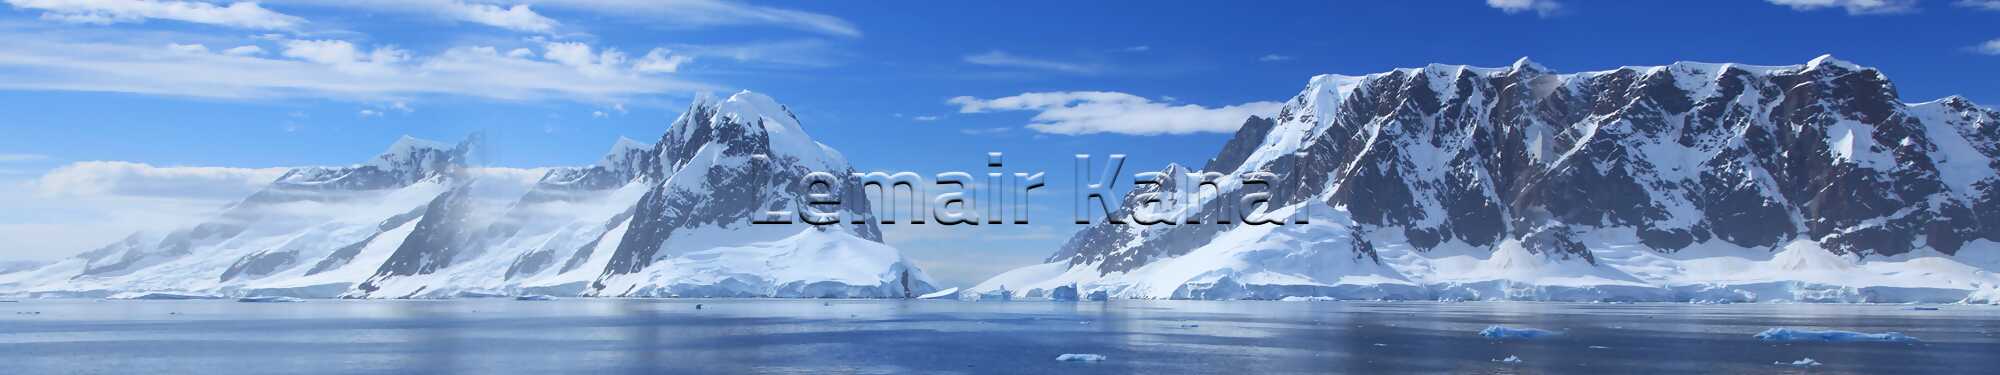 Der Lemaire-Kanal trennt die Kiewer Halbinsel der Antarktischen Halbinsel von der Insel Booth